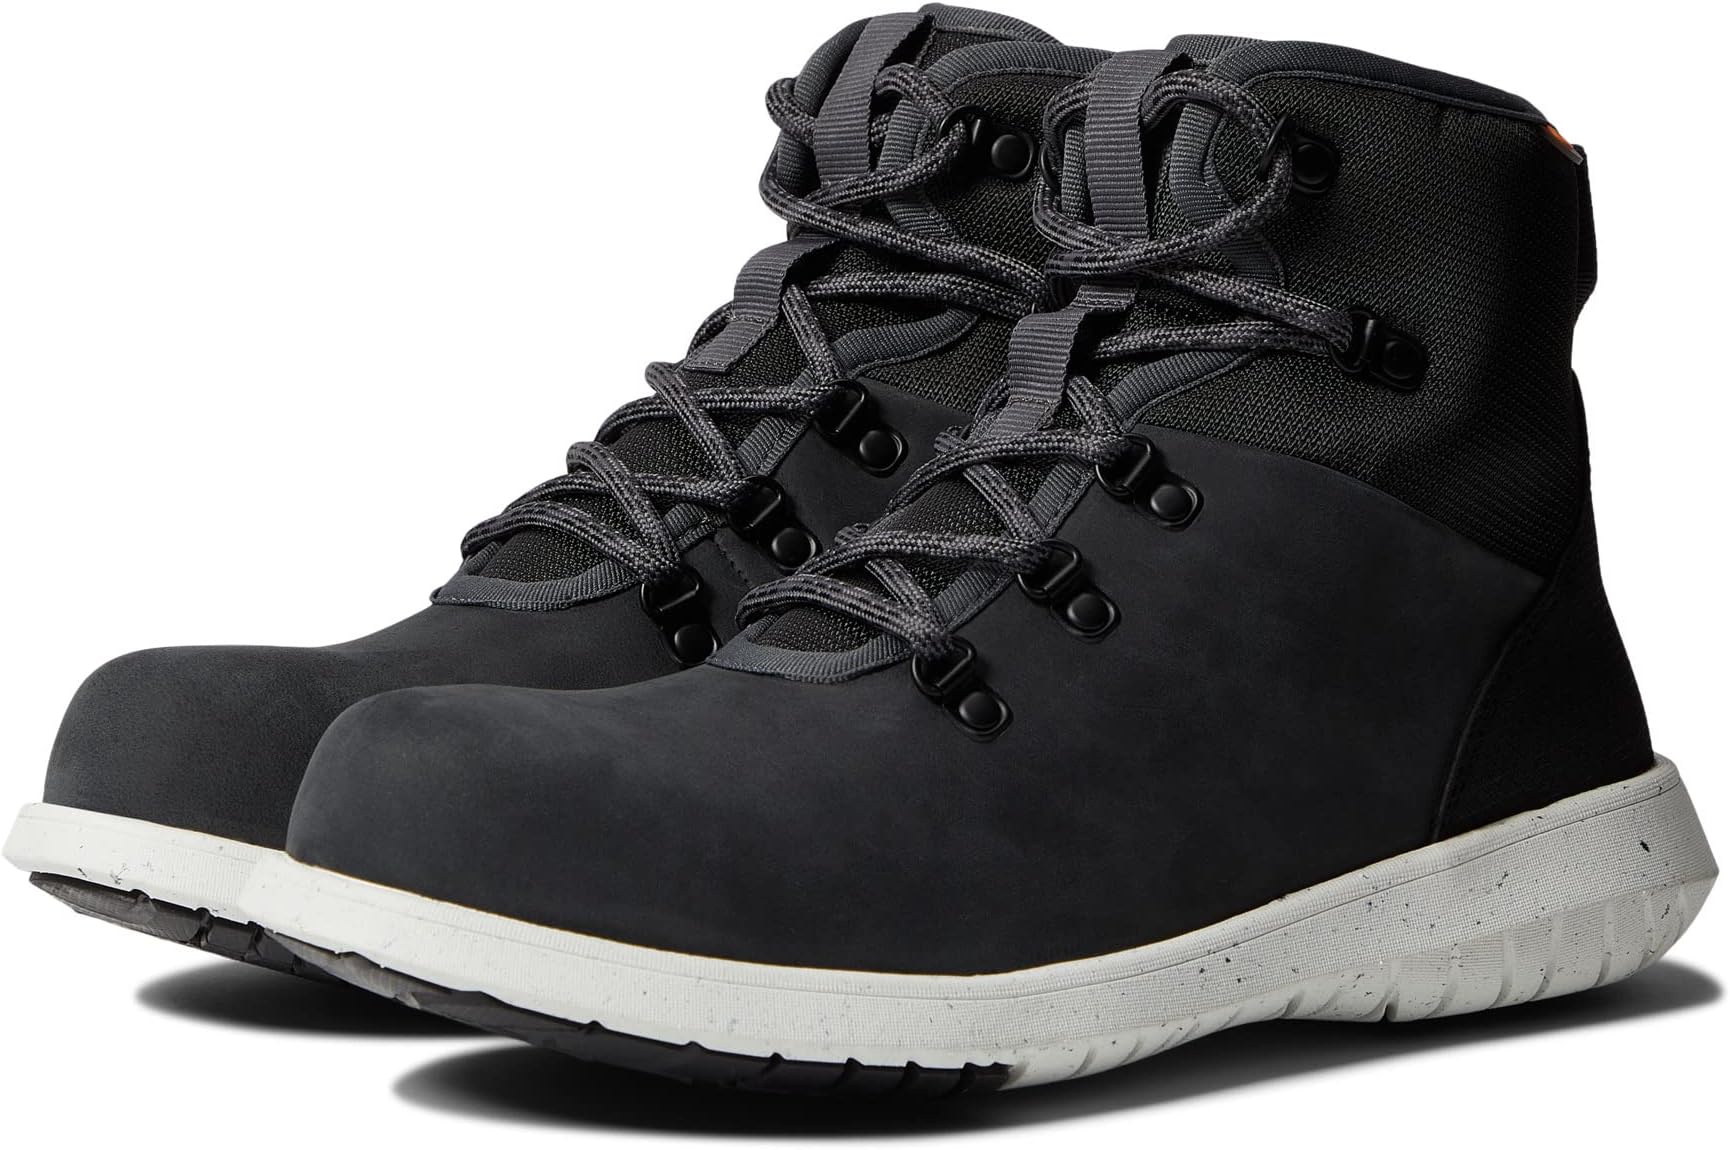 Рабочая обувь с композитным носком Cypress Lace Composite Safety Toe Bogs, темно-серый